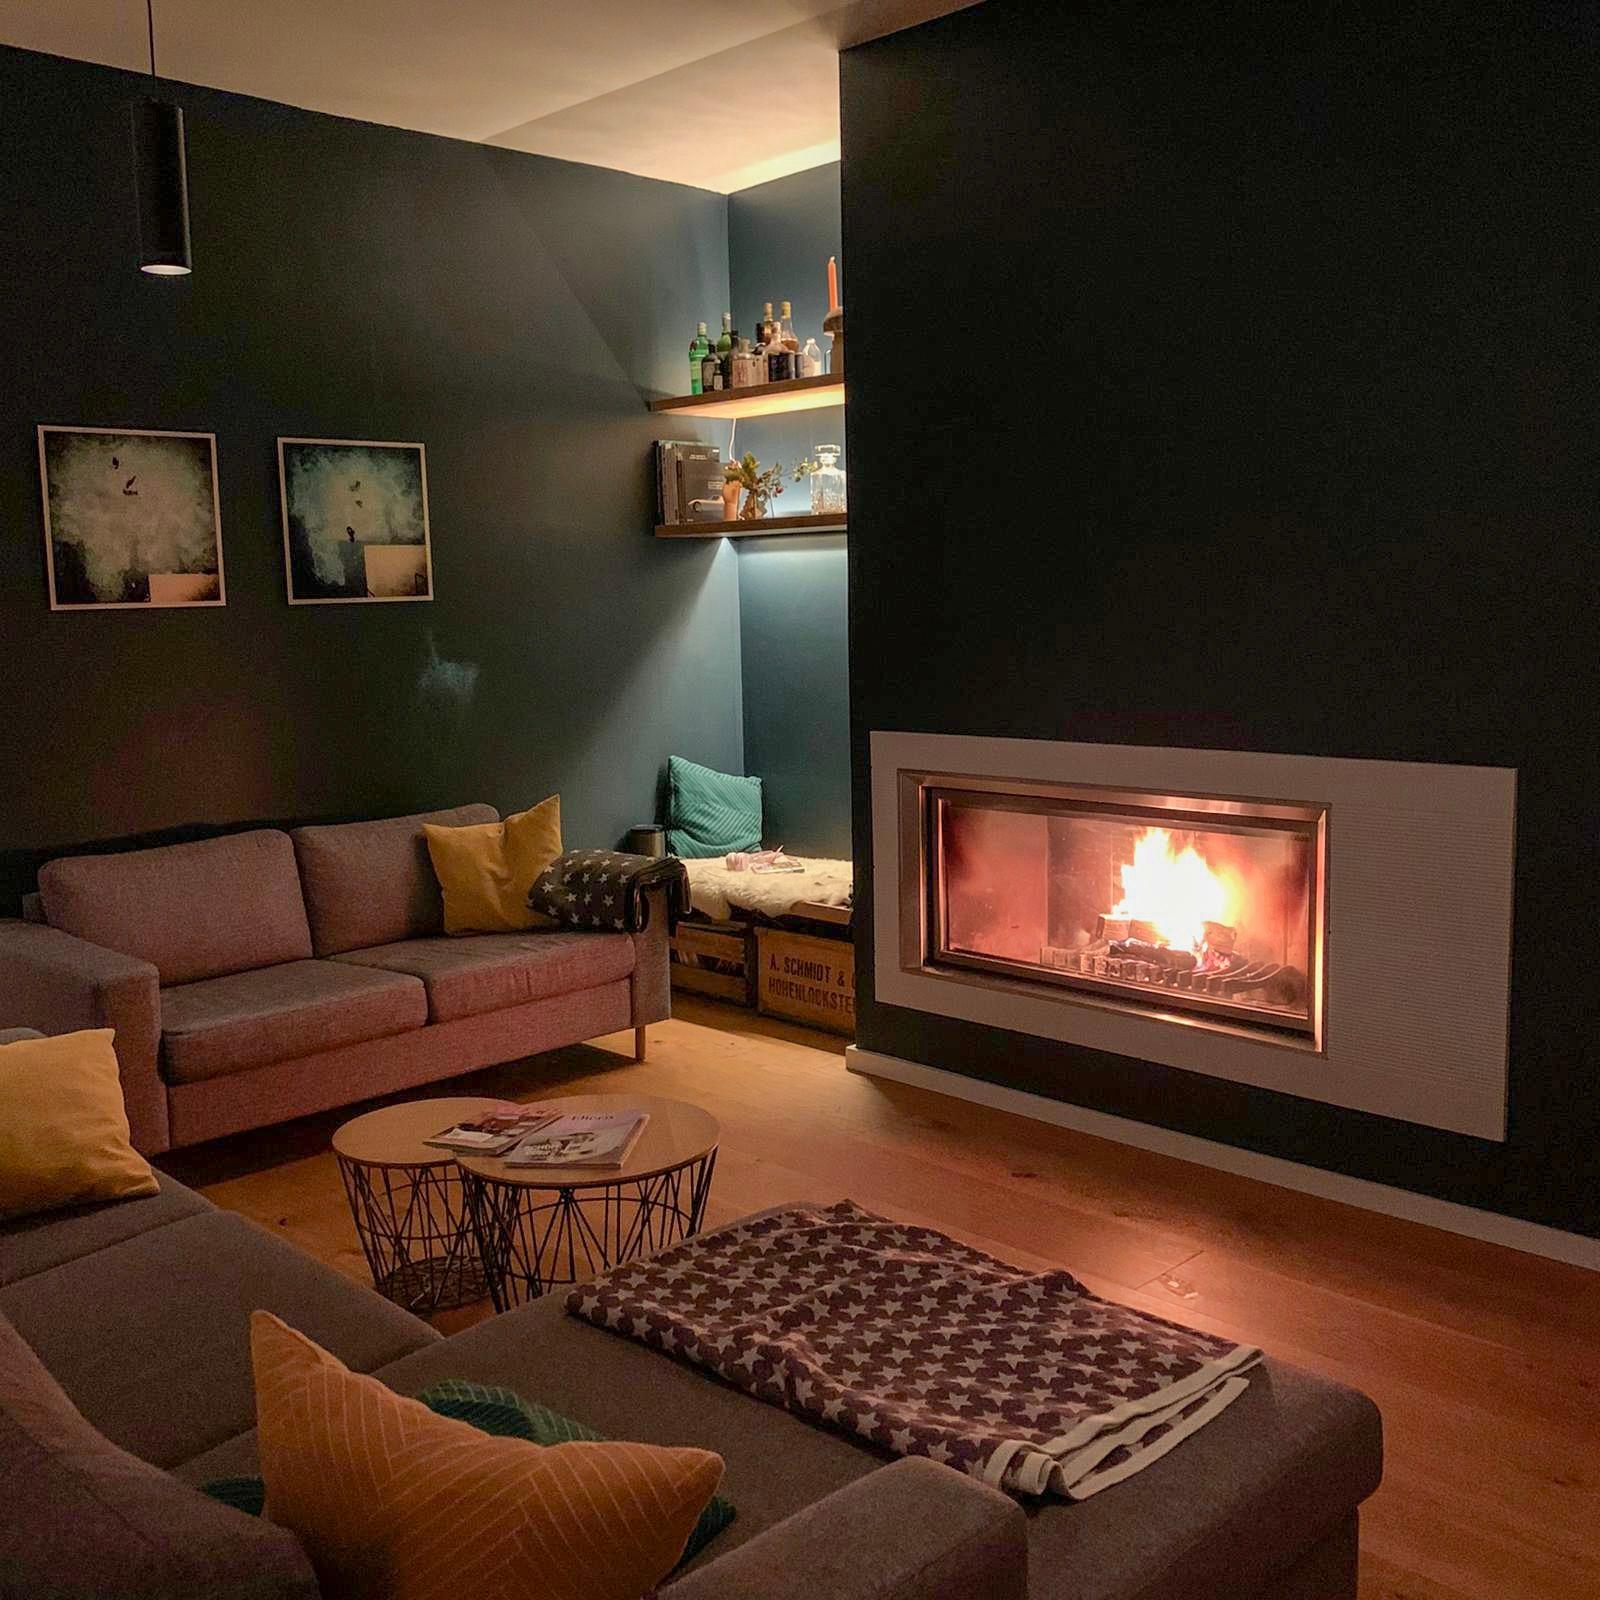 Gemütlichkeit kehrt ein #fireplace #hygge #livingroom #chimney